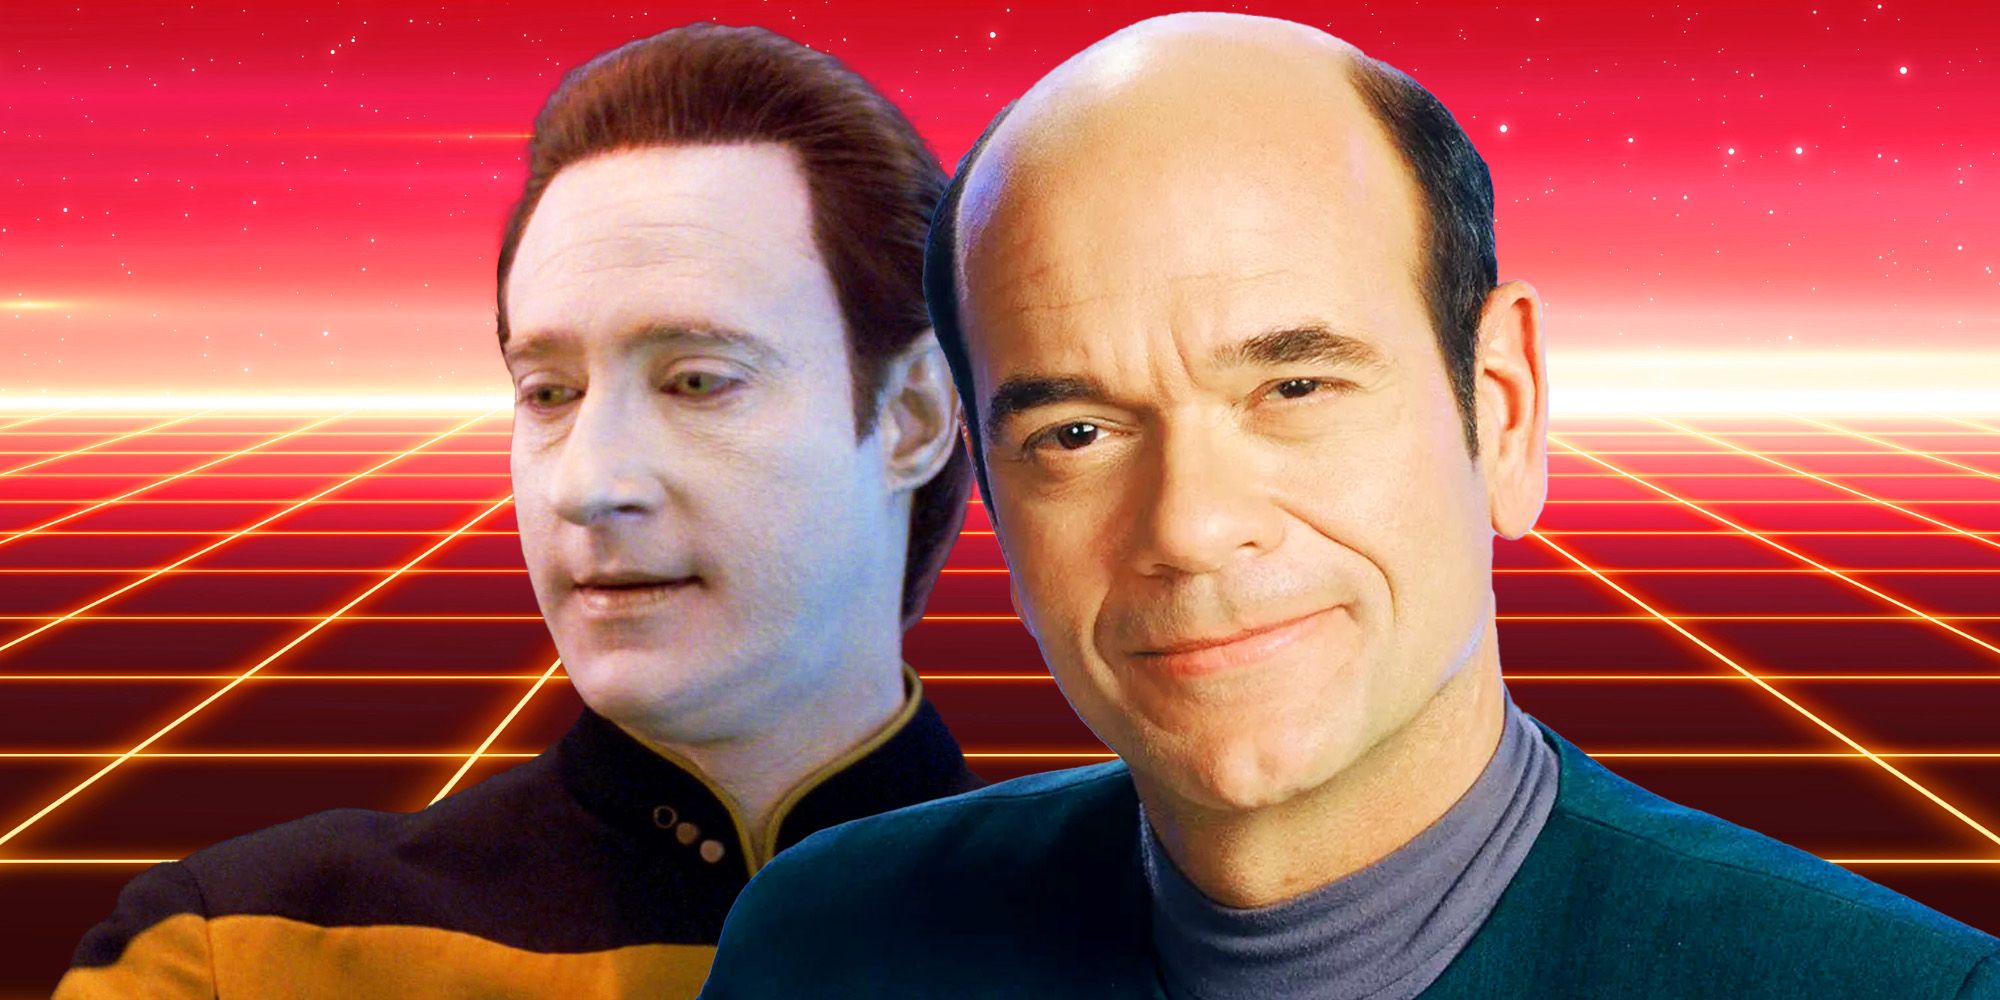 Los datos "nunca podrían" tener romances como Star Trek: el médico de la Voyager, dice Robert Picardo